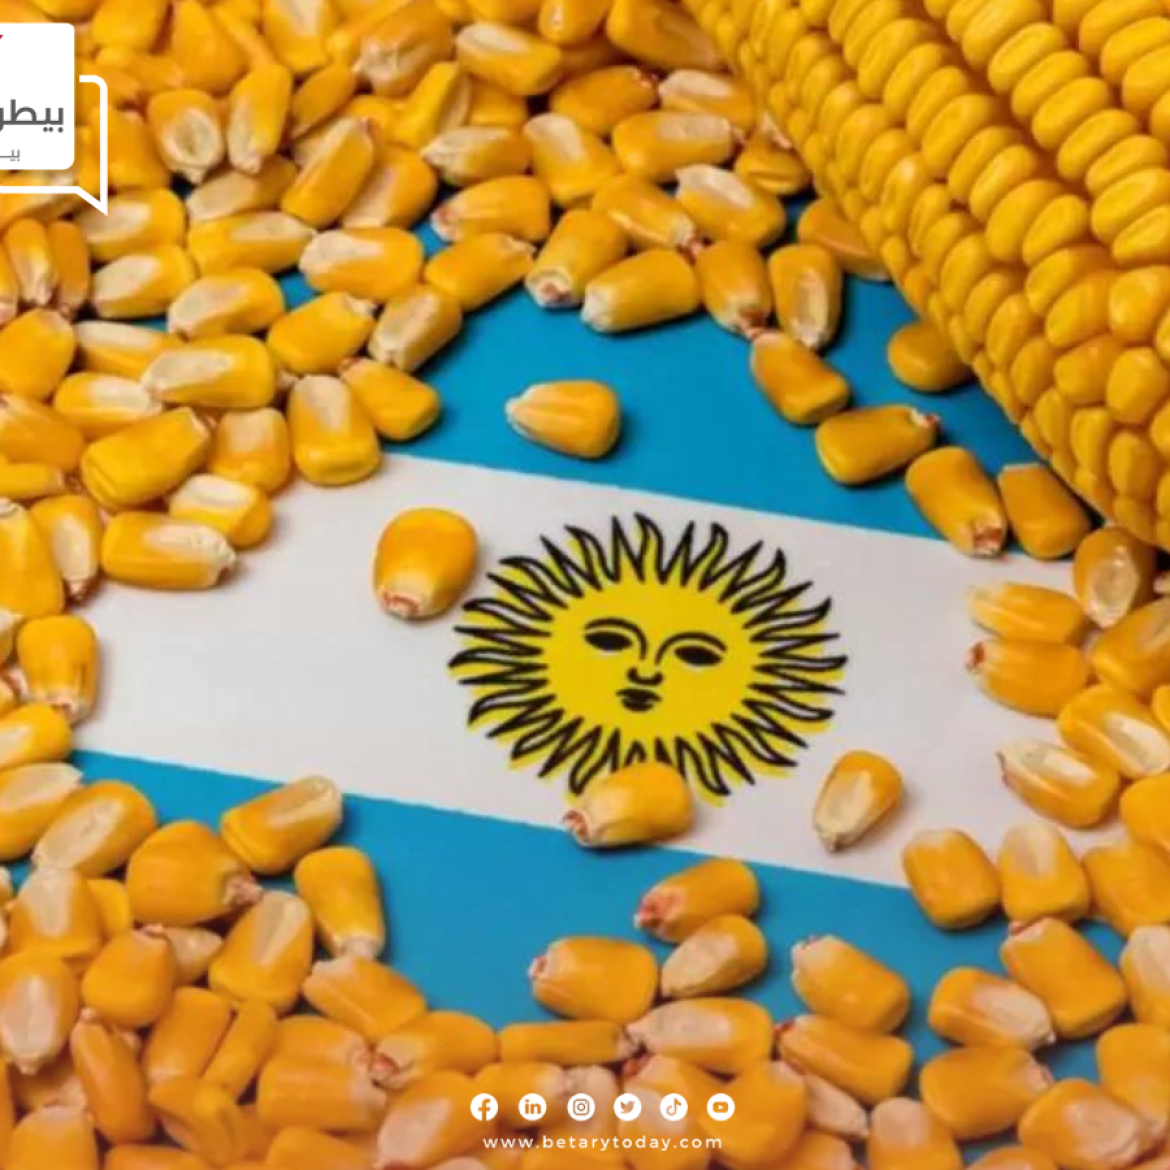 بعد الإحصائيات الأخيرة…توقعات بتراجع محصول الذرة وفول الصويا الأرجنتيني